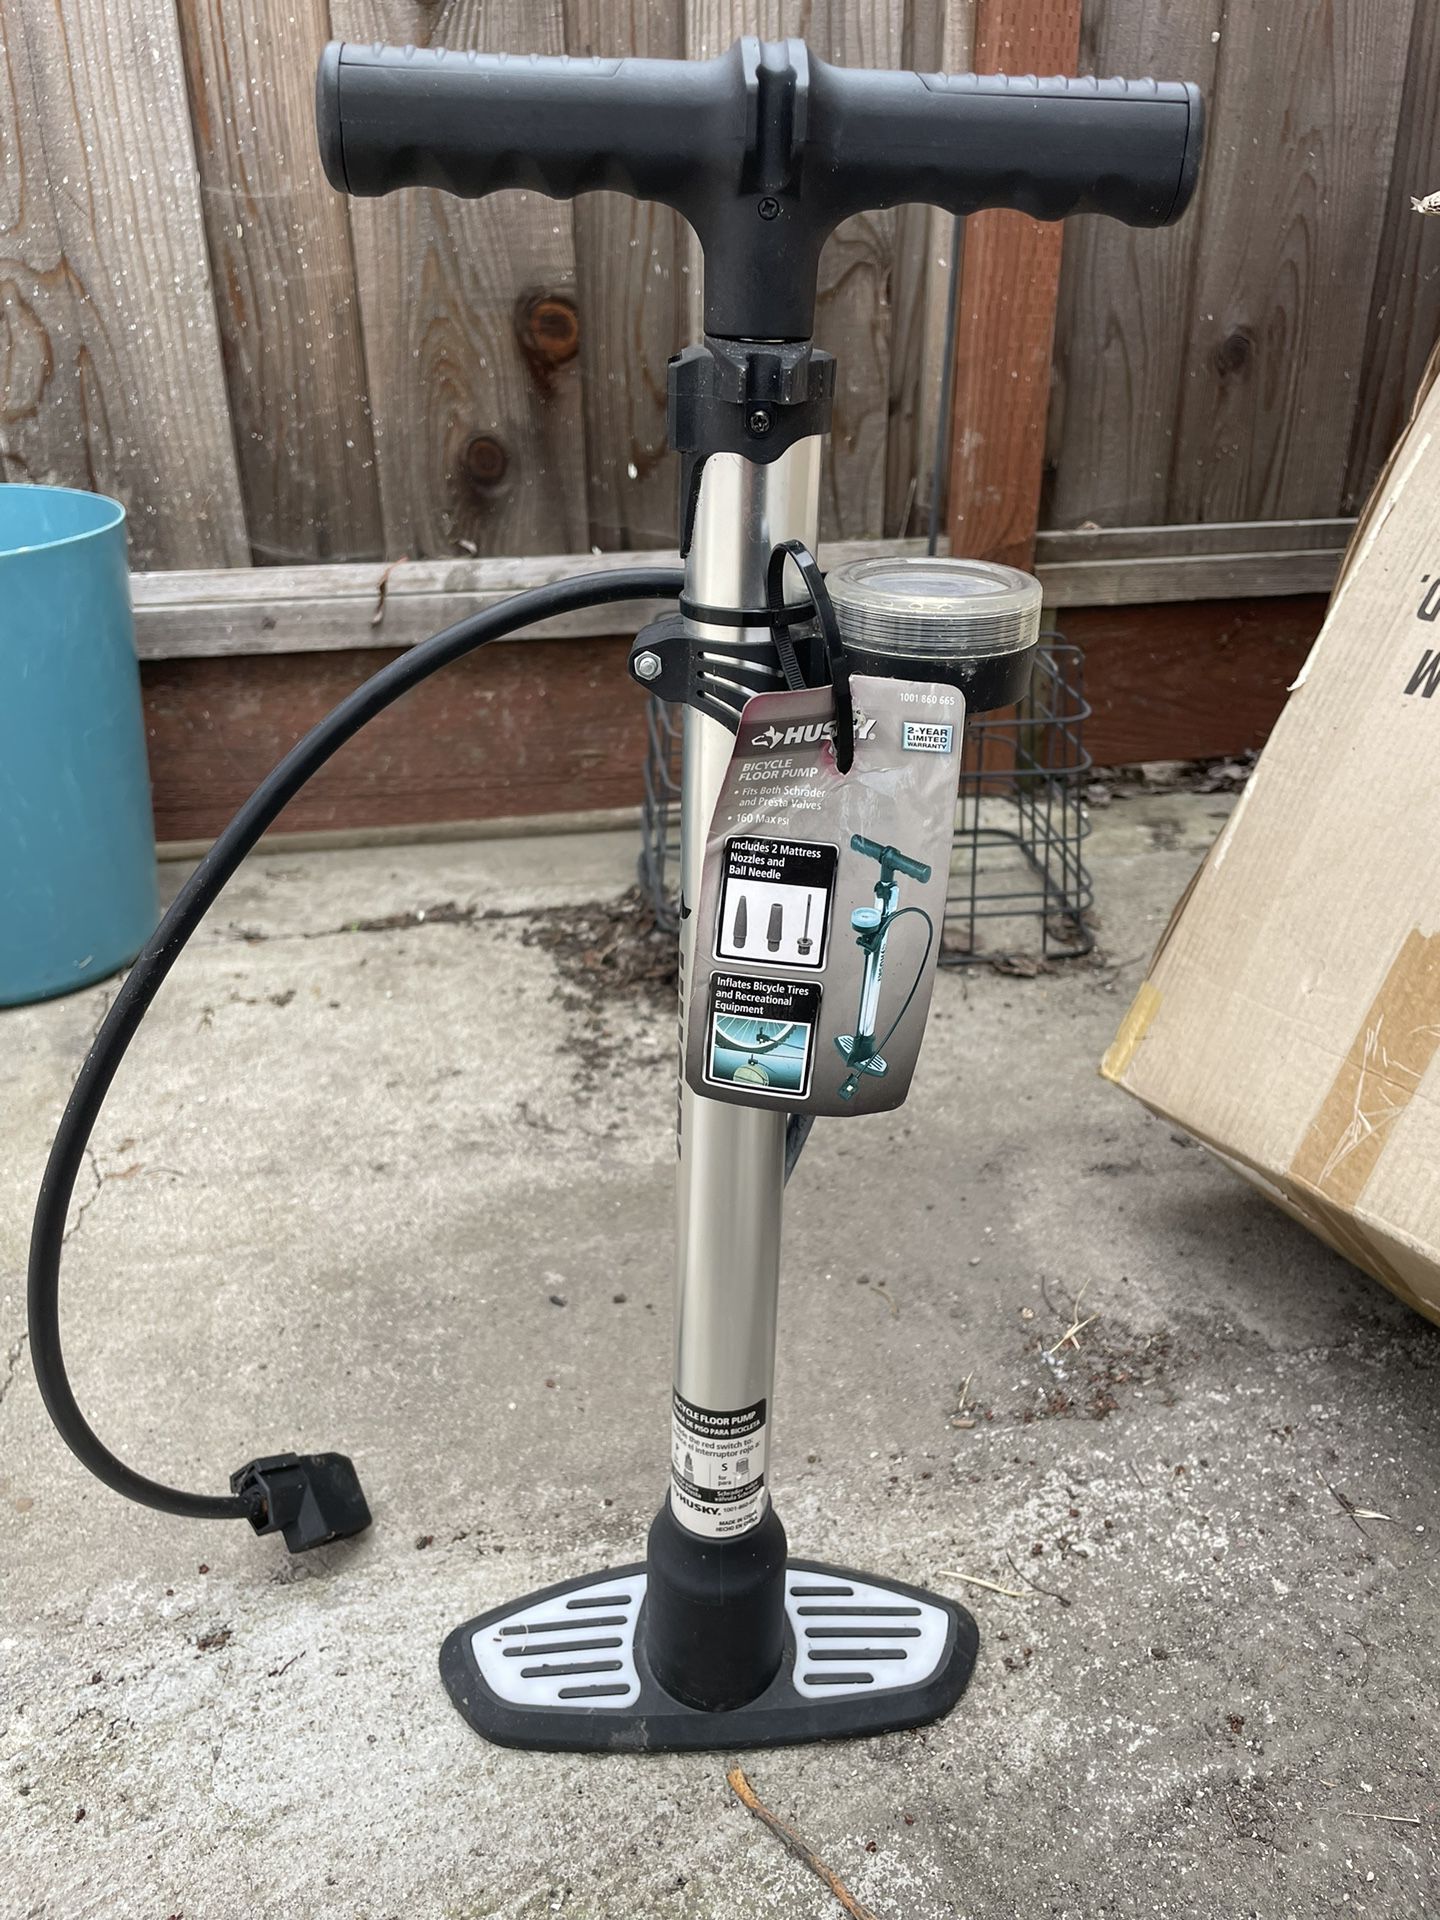 New floor bicycle bike air pump